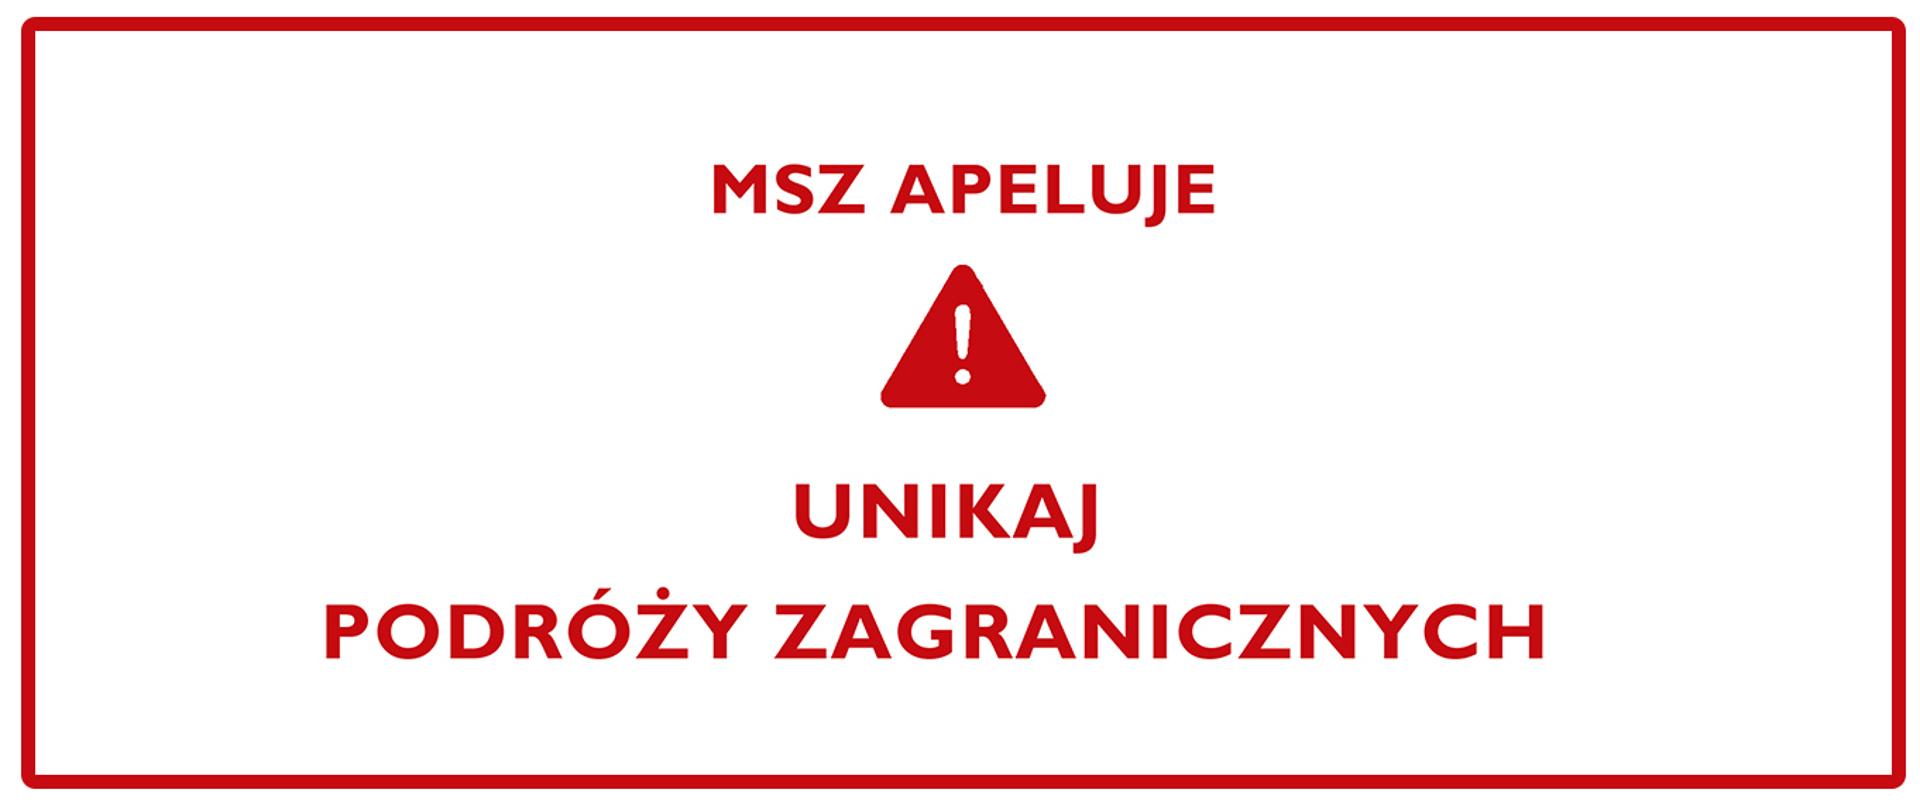 Na środku czerwony ostrzegawczy trójkąt z wykrzyknikiem nad którym znajduje się napis MSZ apeluje. Pod nim napis unikaj podróży zagranicznych.